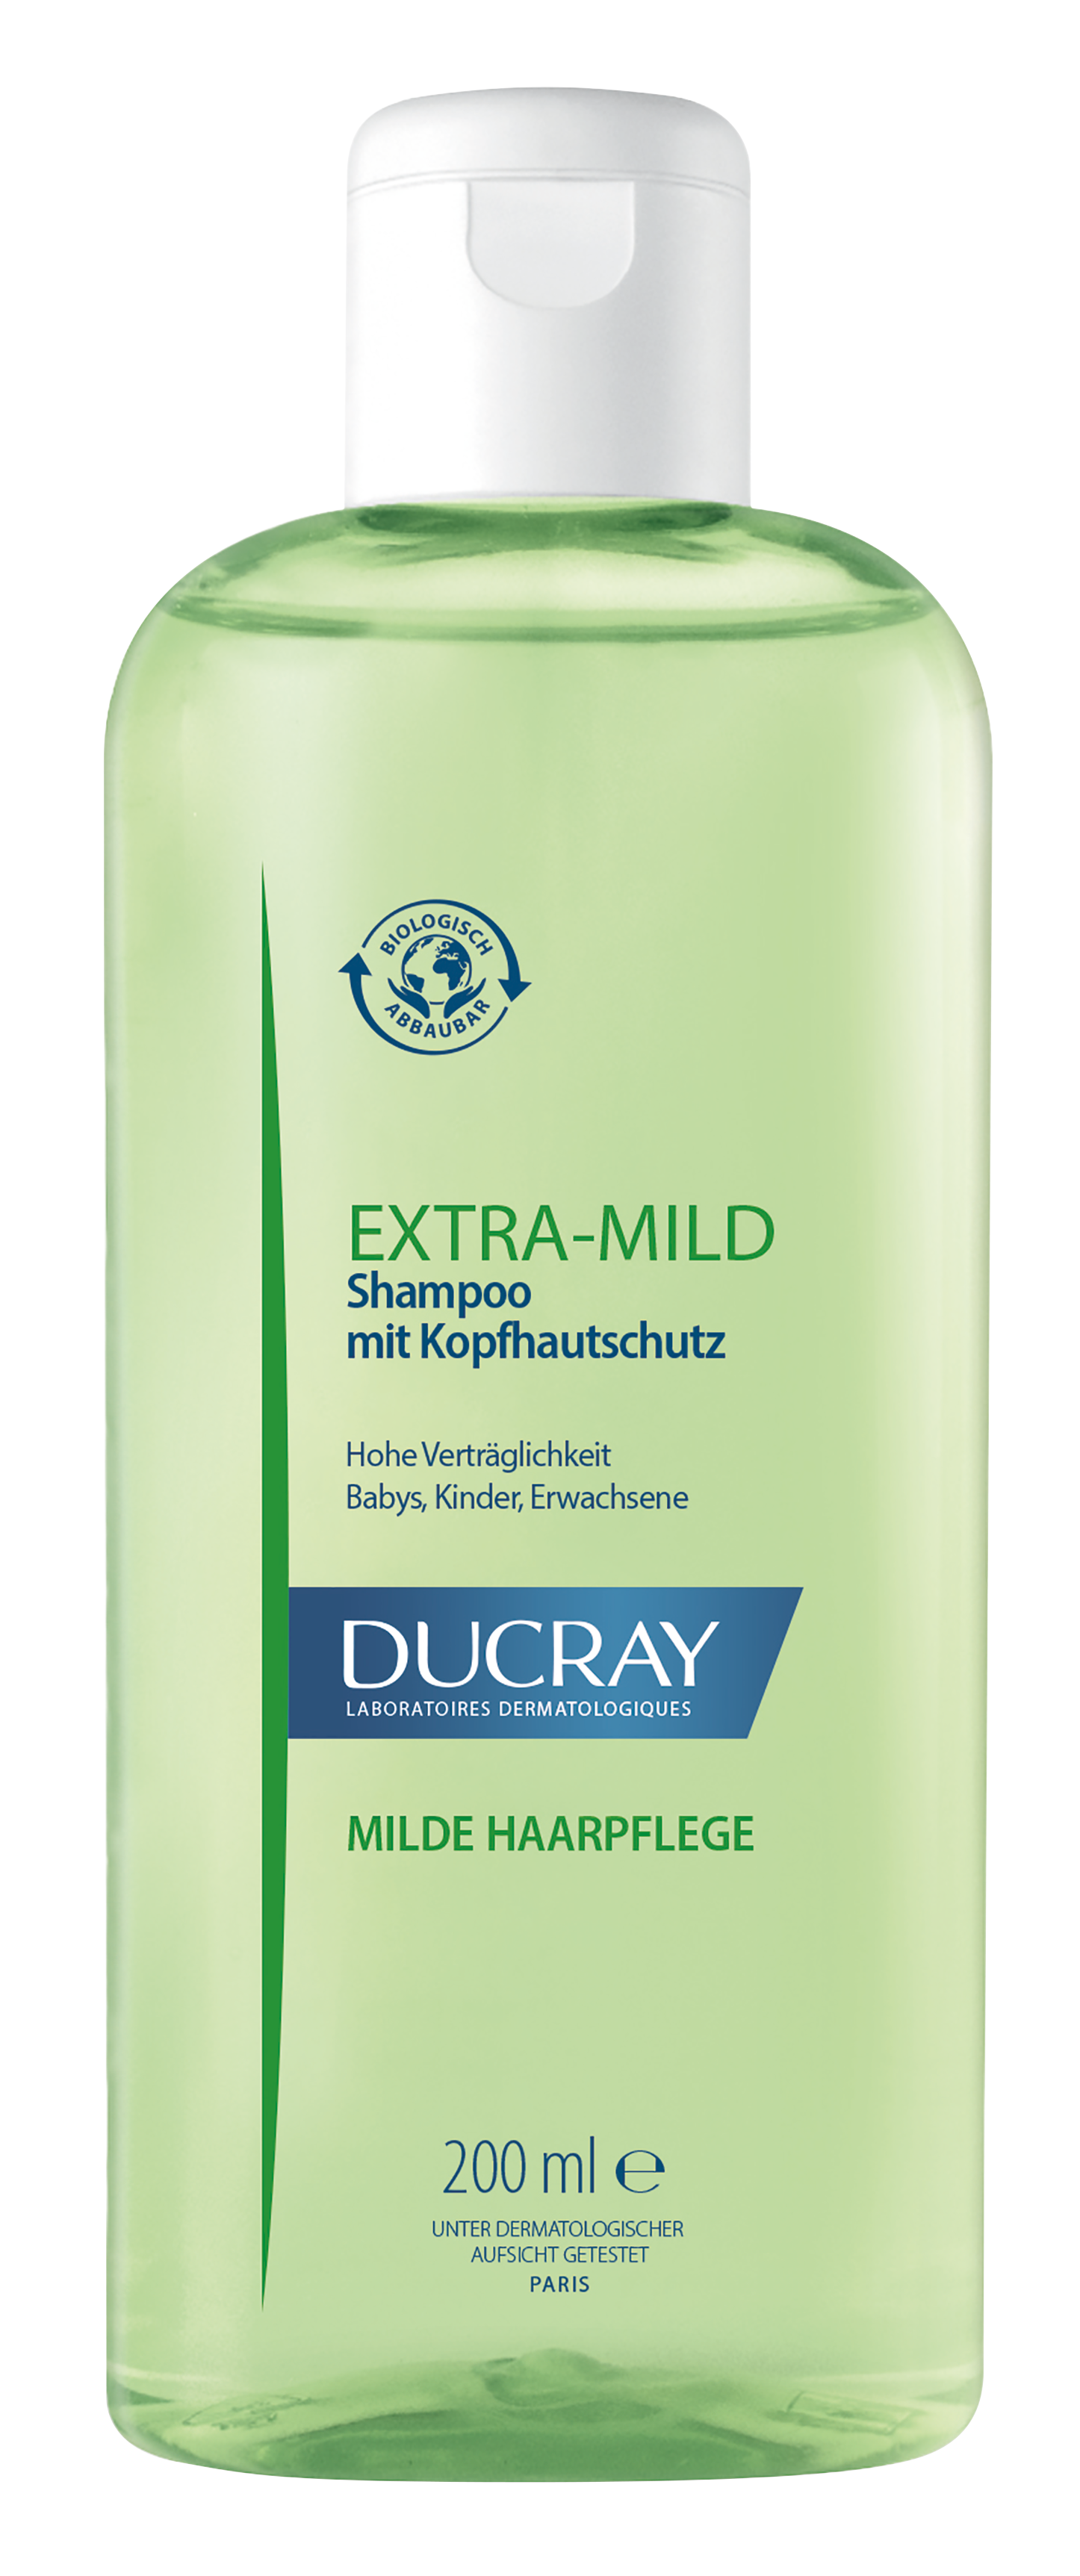 Ducray – EXTRA MILD Shampoo mit Kopfhautschutz 200ml